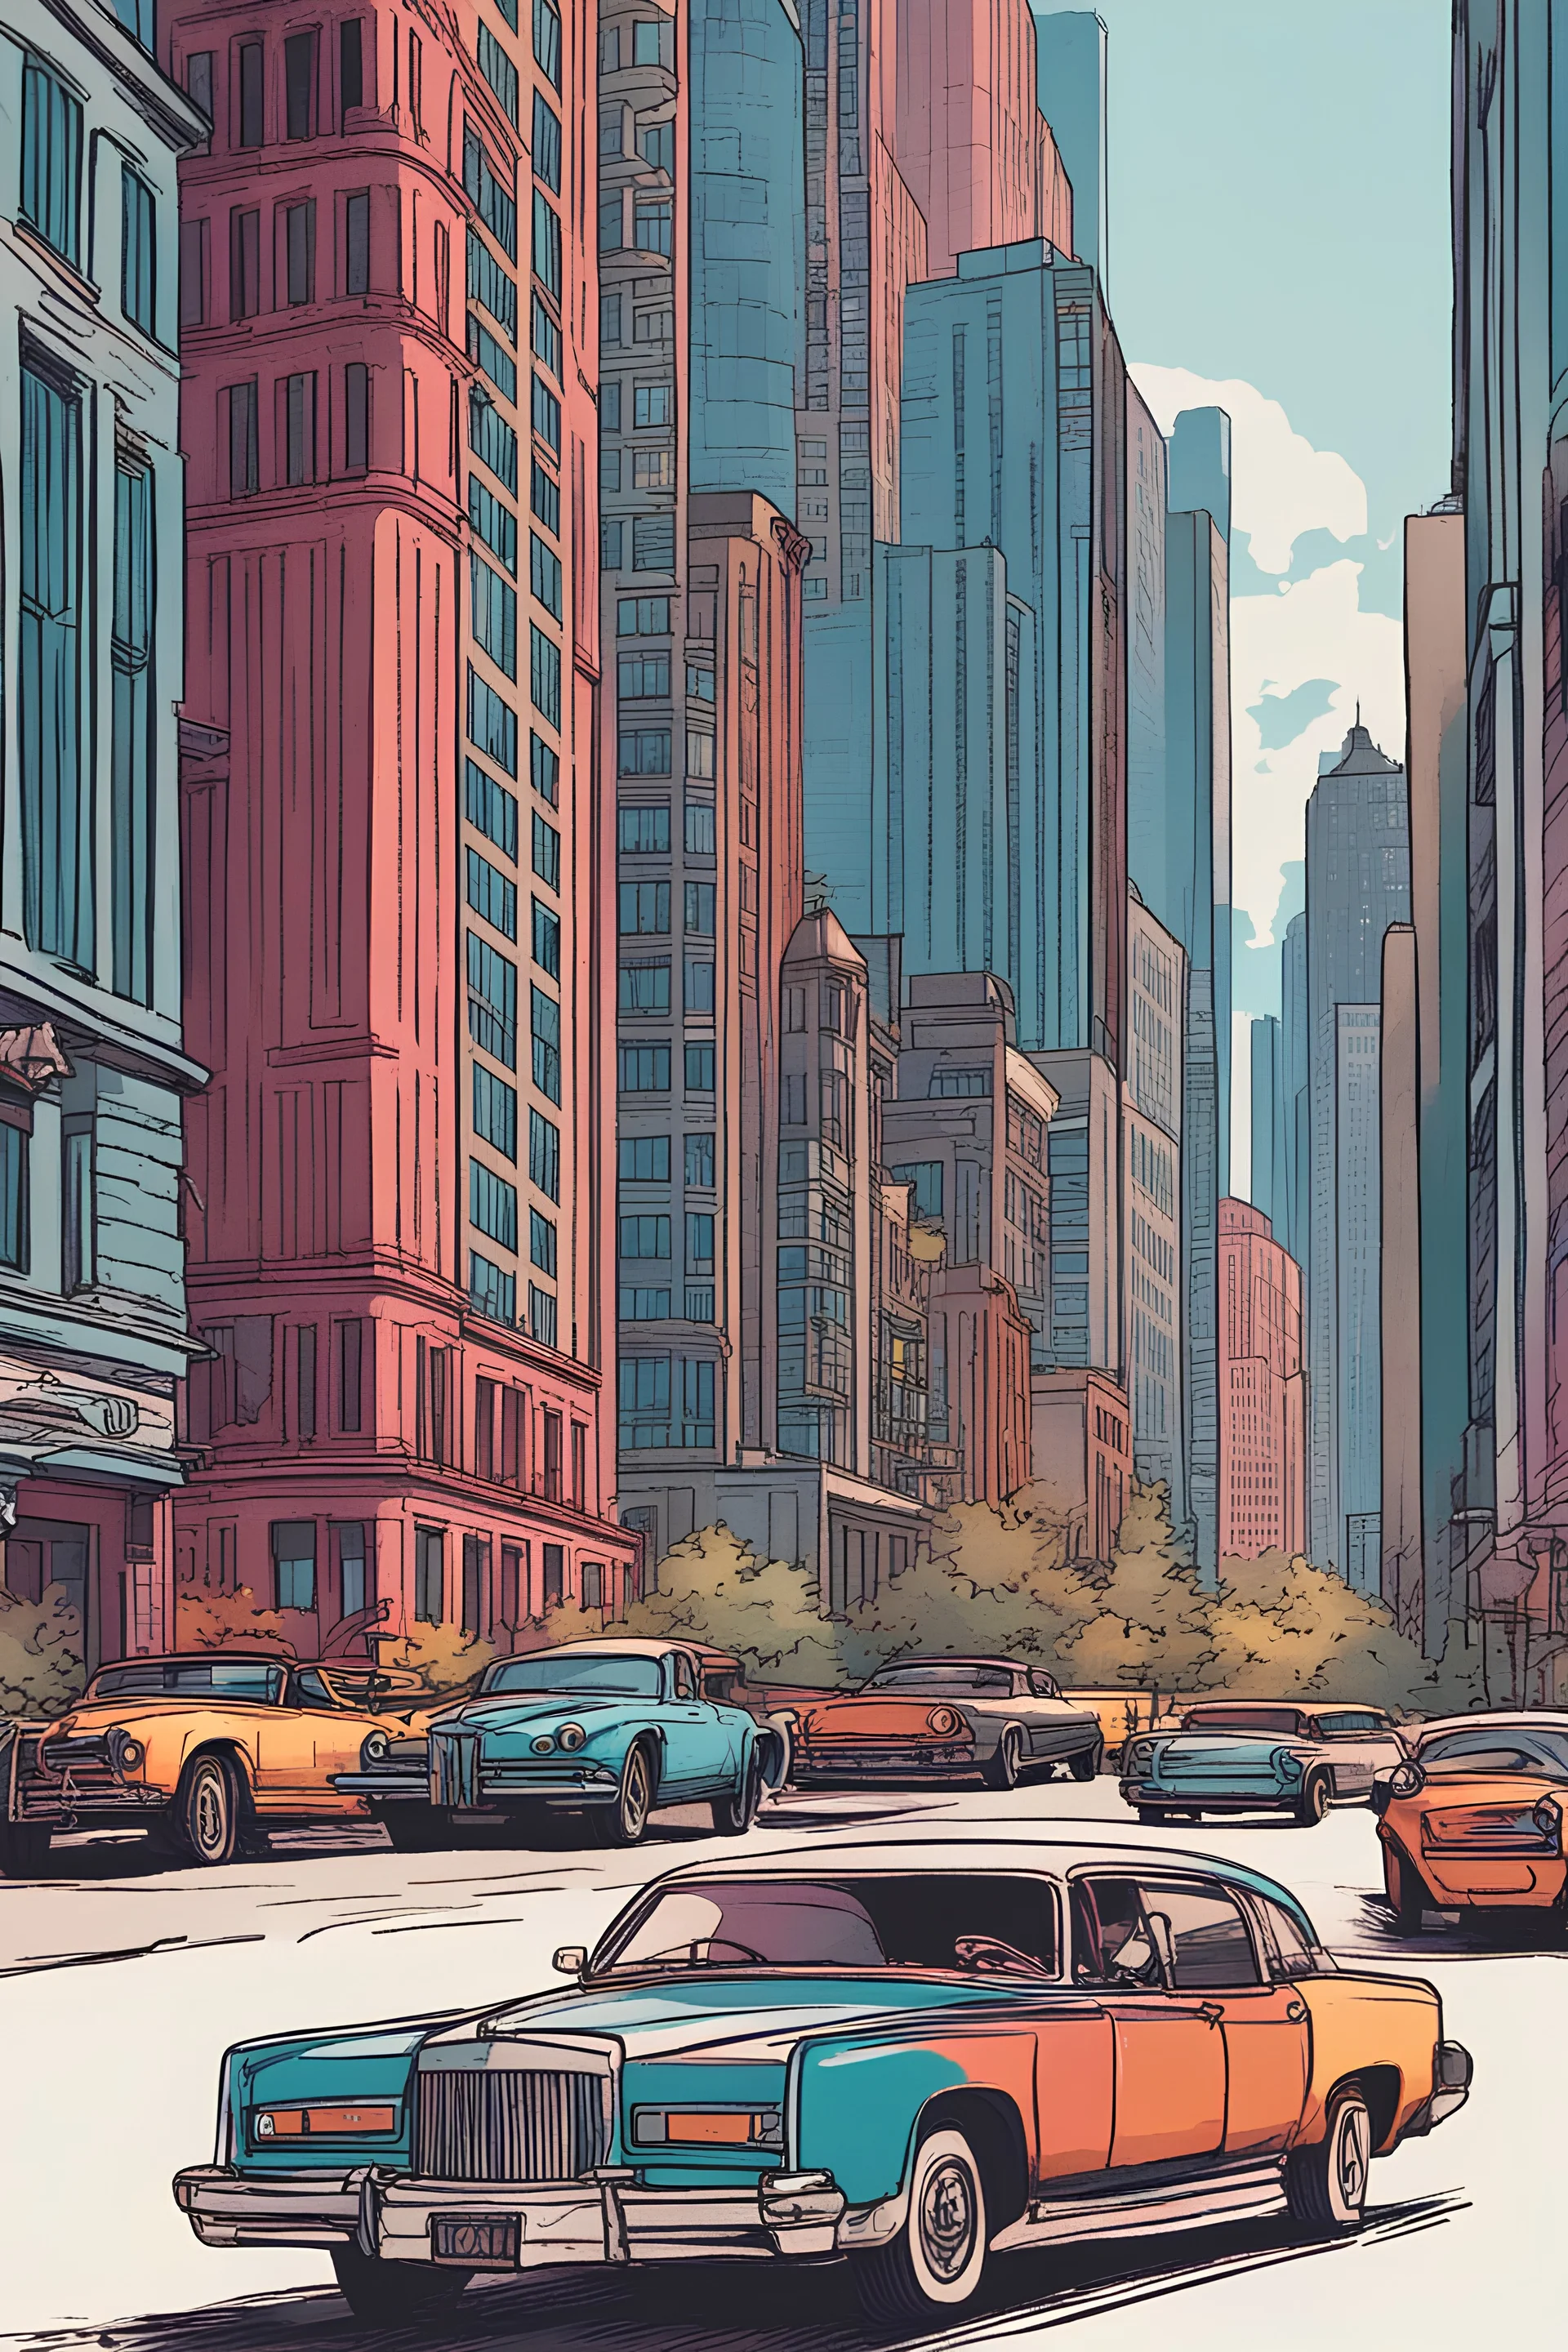 ville bondé de chicago avec de gros et long building imposant. personnes marchant et en voitures de luxe.coloré